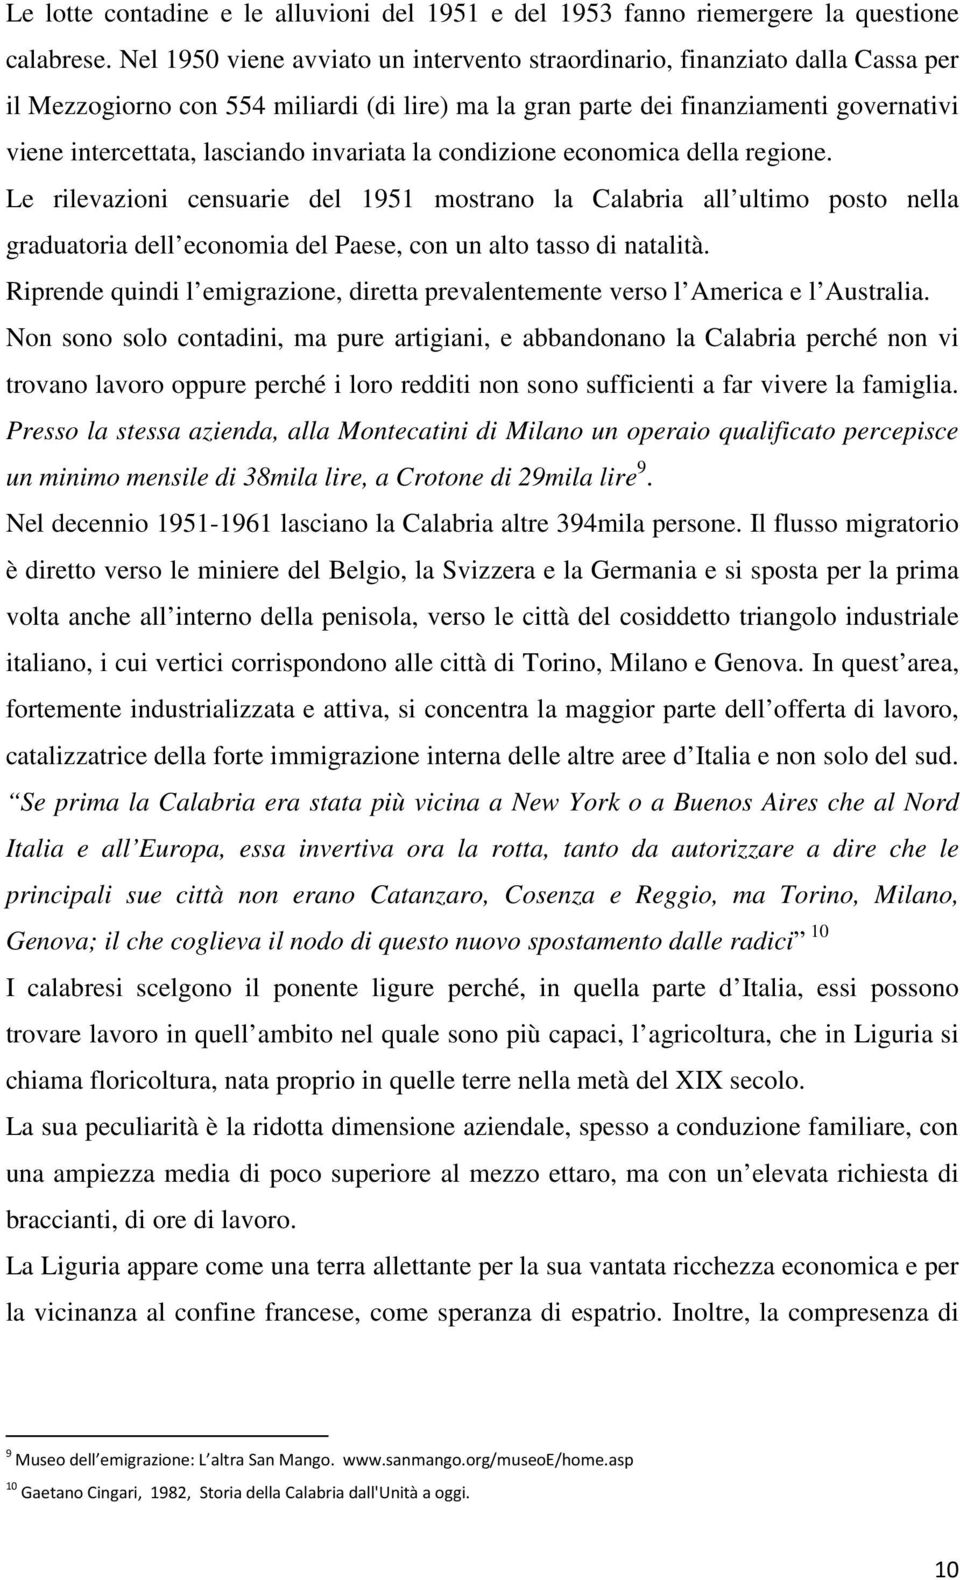 invariata la condizione economica della regione. Le rilevazioni censuarie del 1951 mostrano la Calabria all ultimo posto nella graduatoria dell economia del Paese, con un alto tasso di natalità.